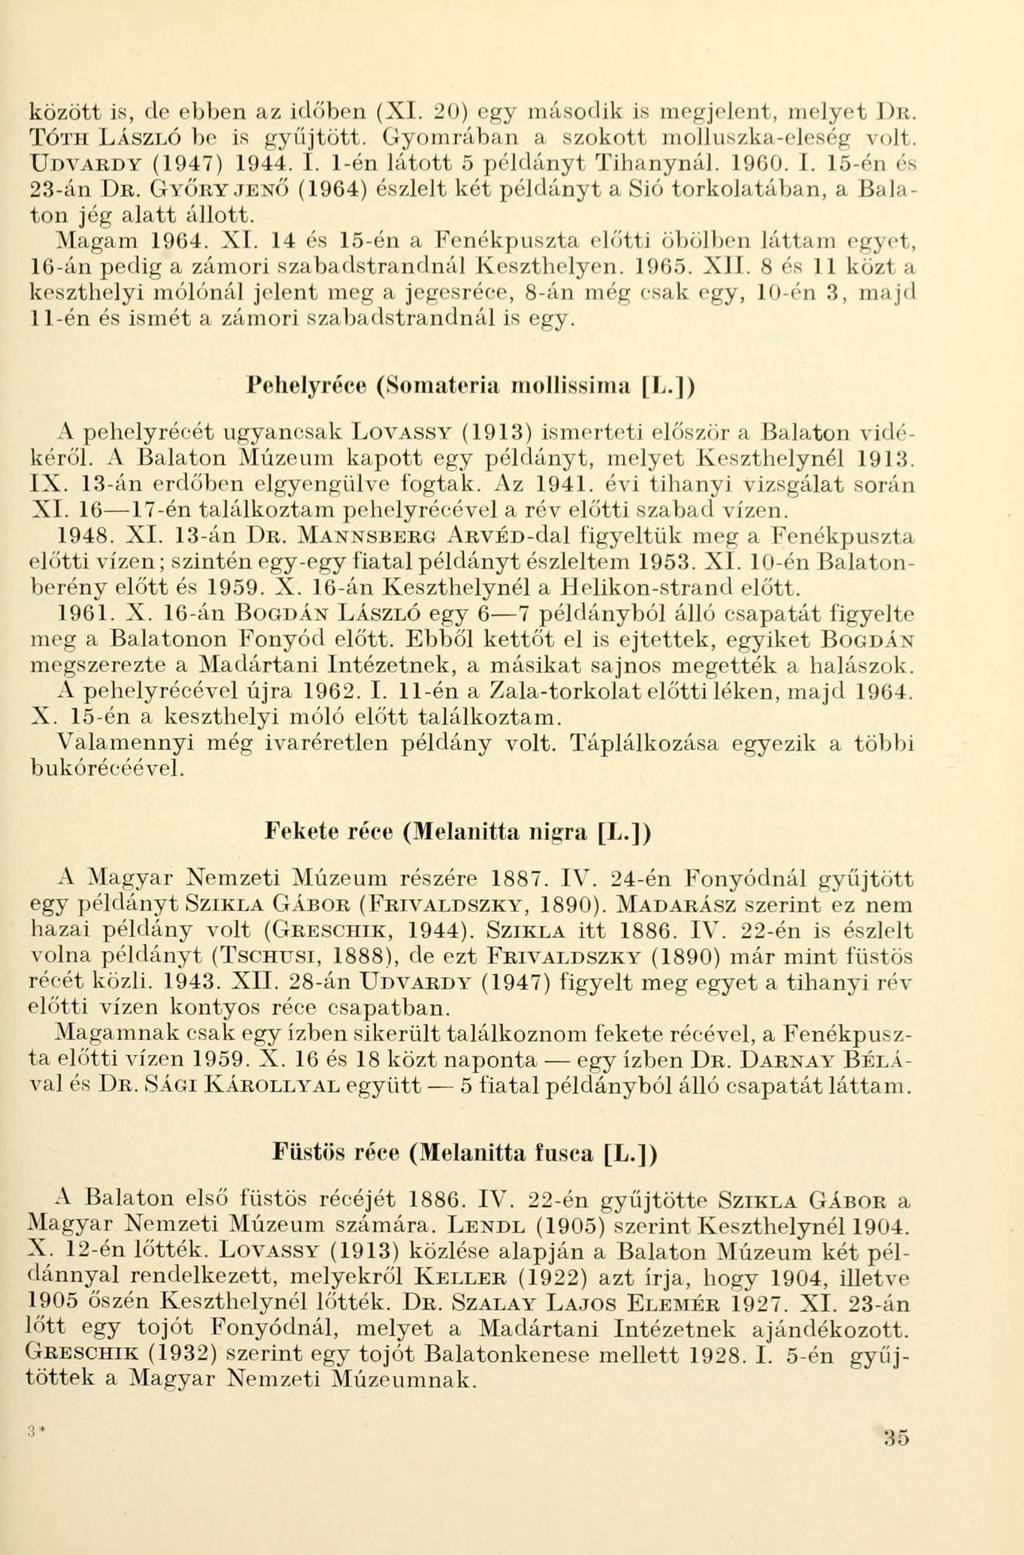 között is, de ebben az időben (XI. 20) egy második is megjelent, melyet DR. TÓTH LÁSZLÓ be is gyűjtött. Gyomrában a szokott molluszka-eleség volt. UDVARDY (1947) 1944. 1. 1-én látott 5 példányt Tihanynál.